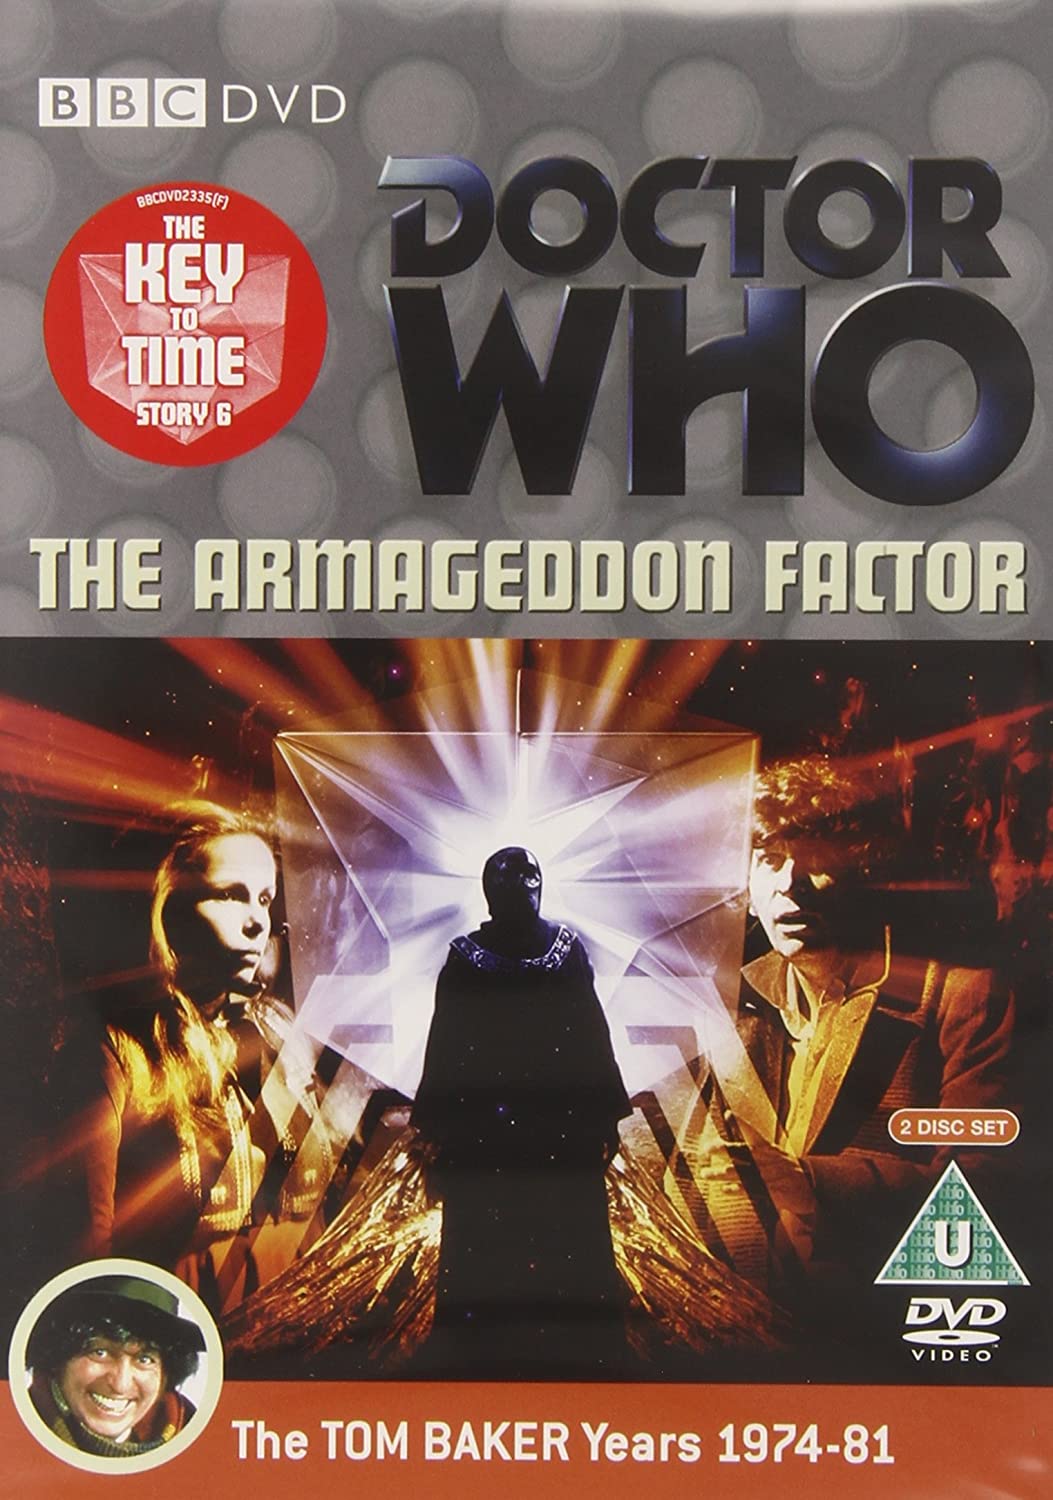 Doctor Who – Der Schlüssel zur Zeit – Science-Fiction [DVD]